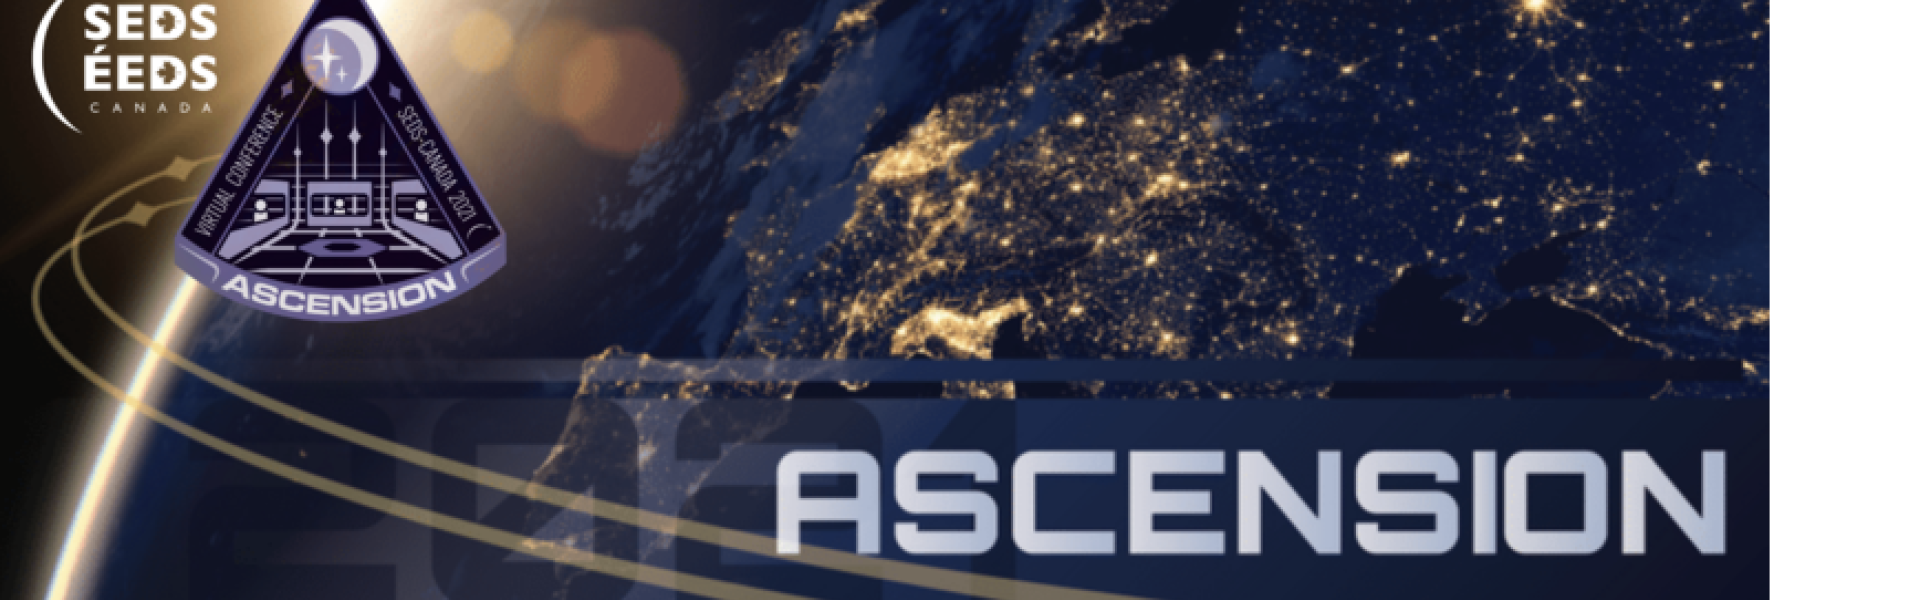 SEDS Ascension 2021